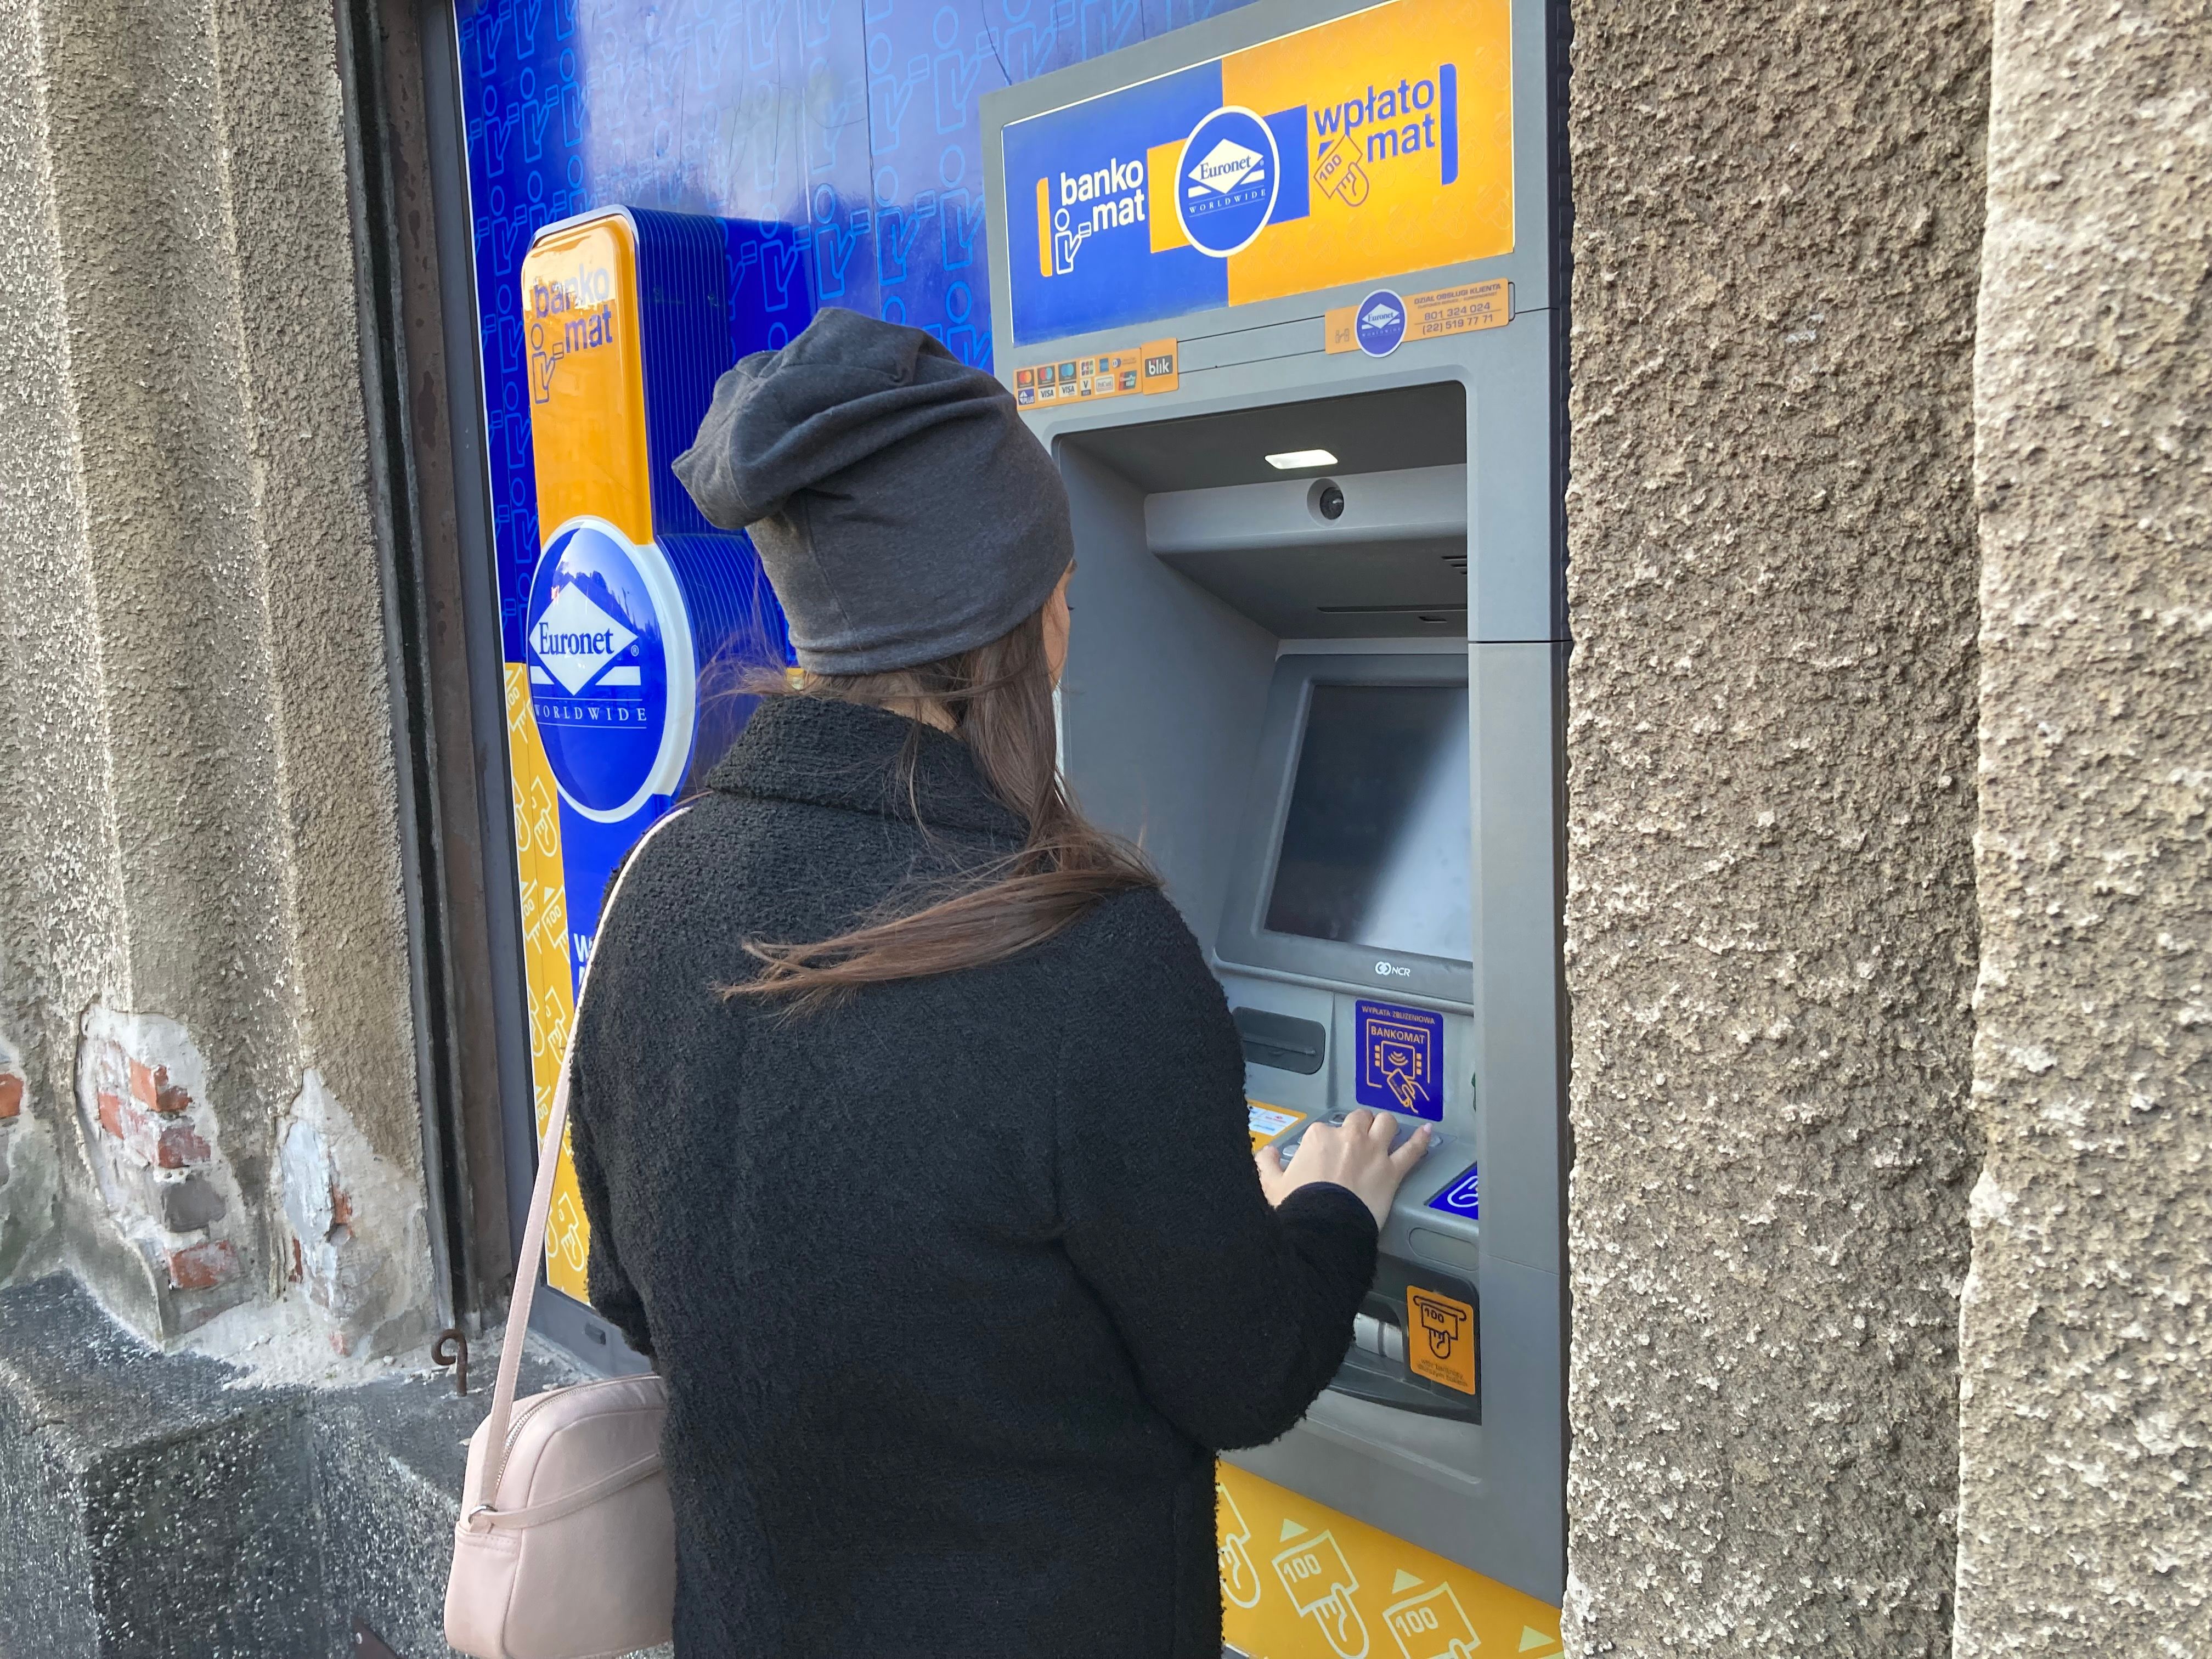 bankomat-euronet-wypłata pieniędzy-kobieta